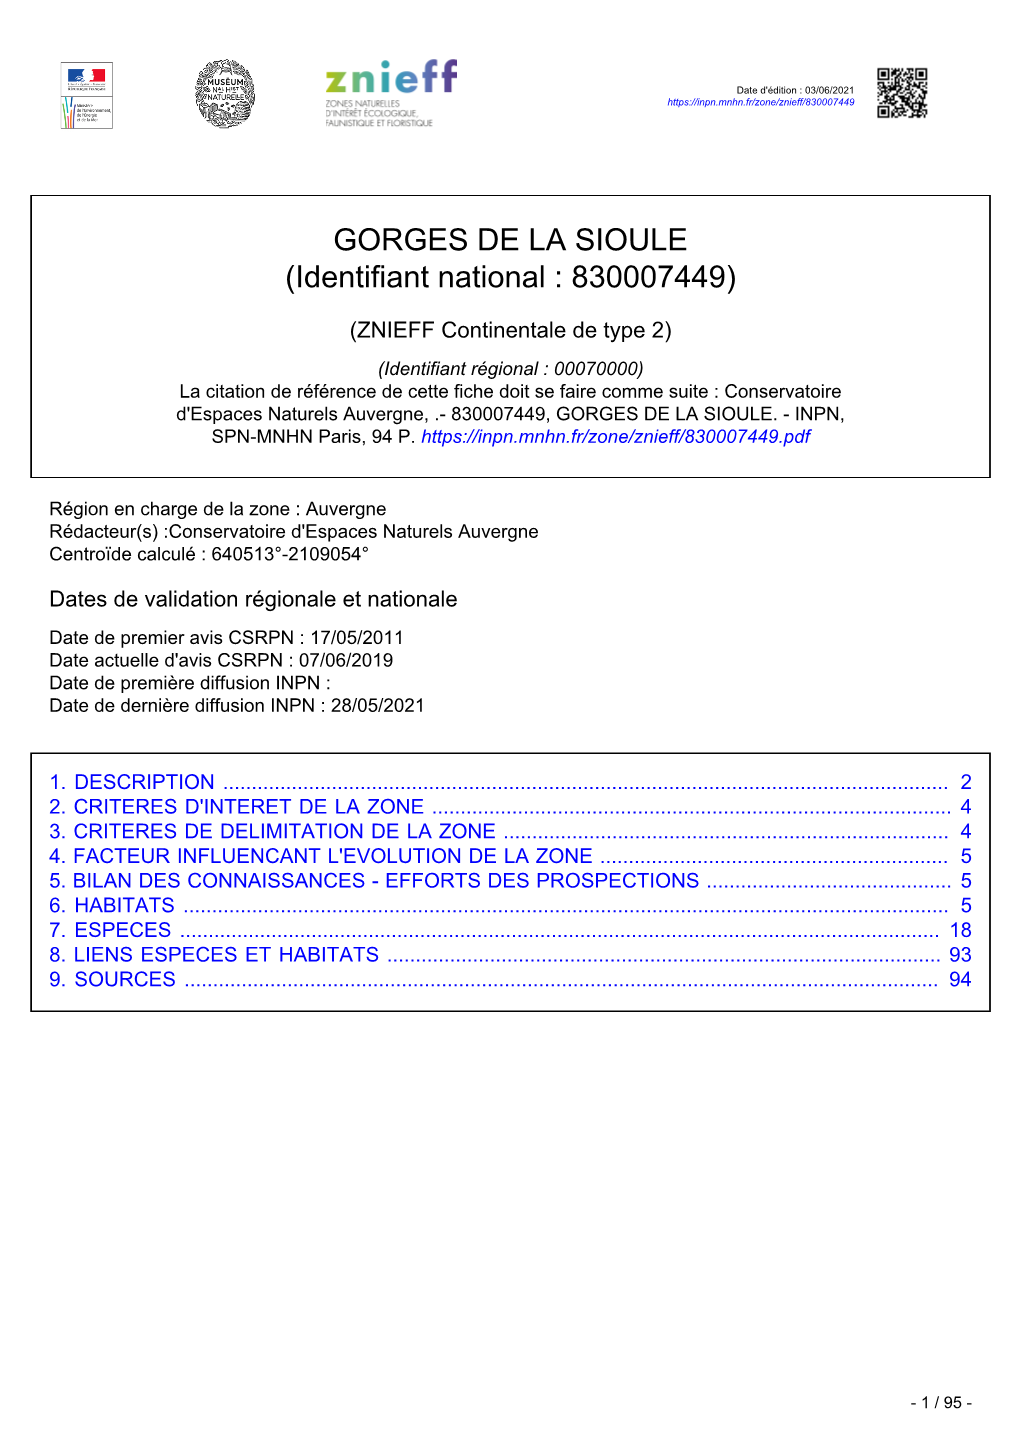 GORGES DE LA SIOULE (Identifiant National : 830007449)